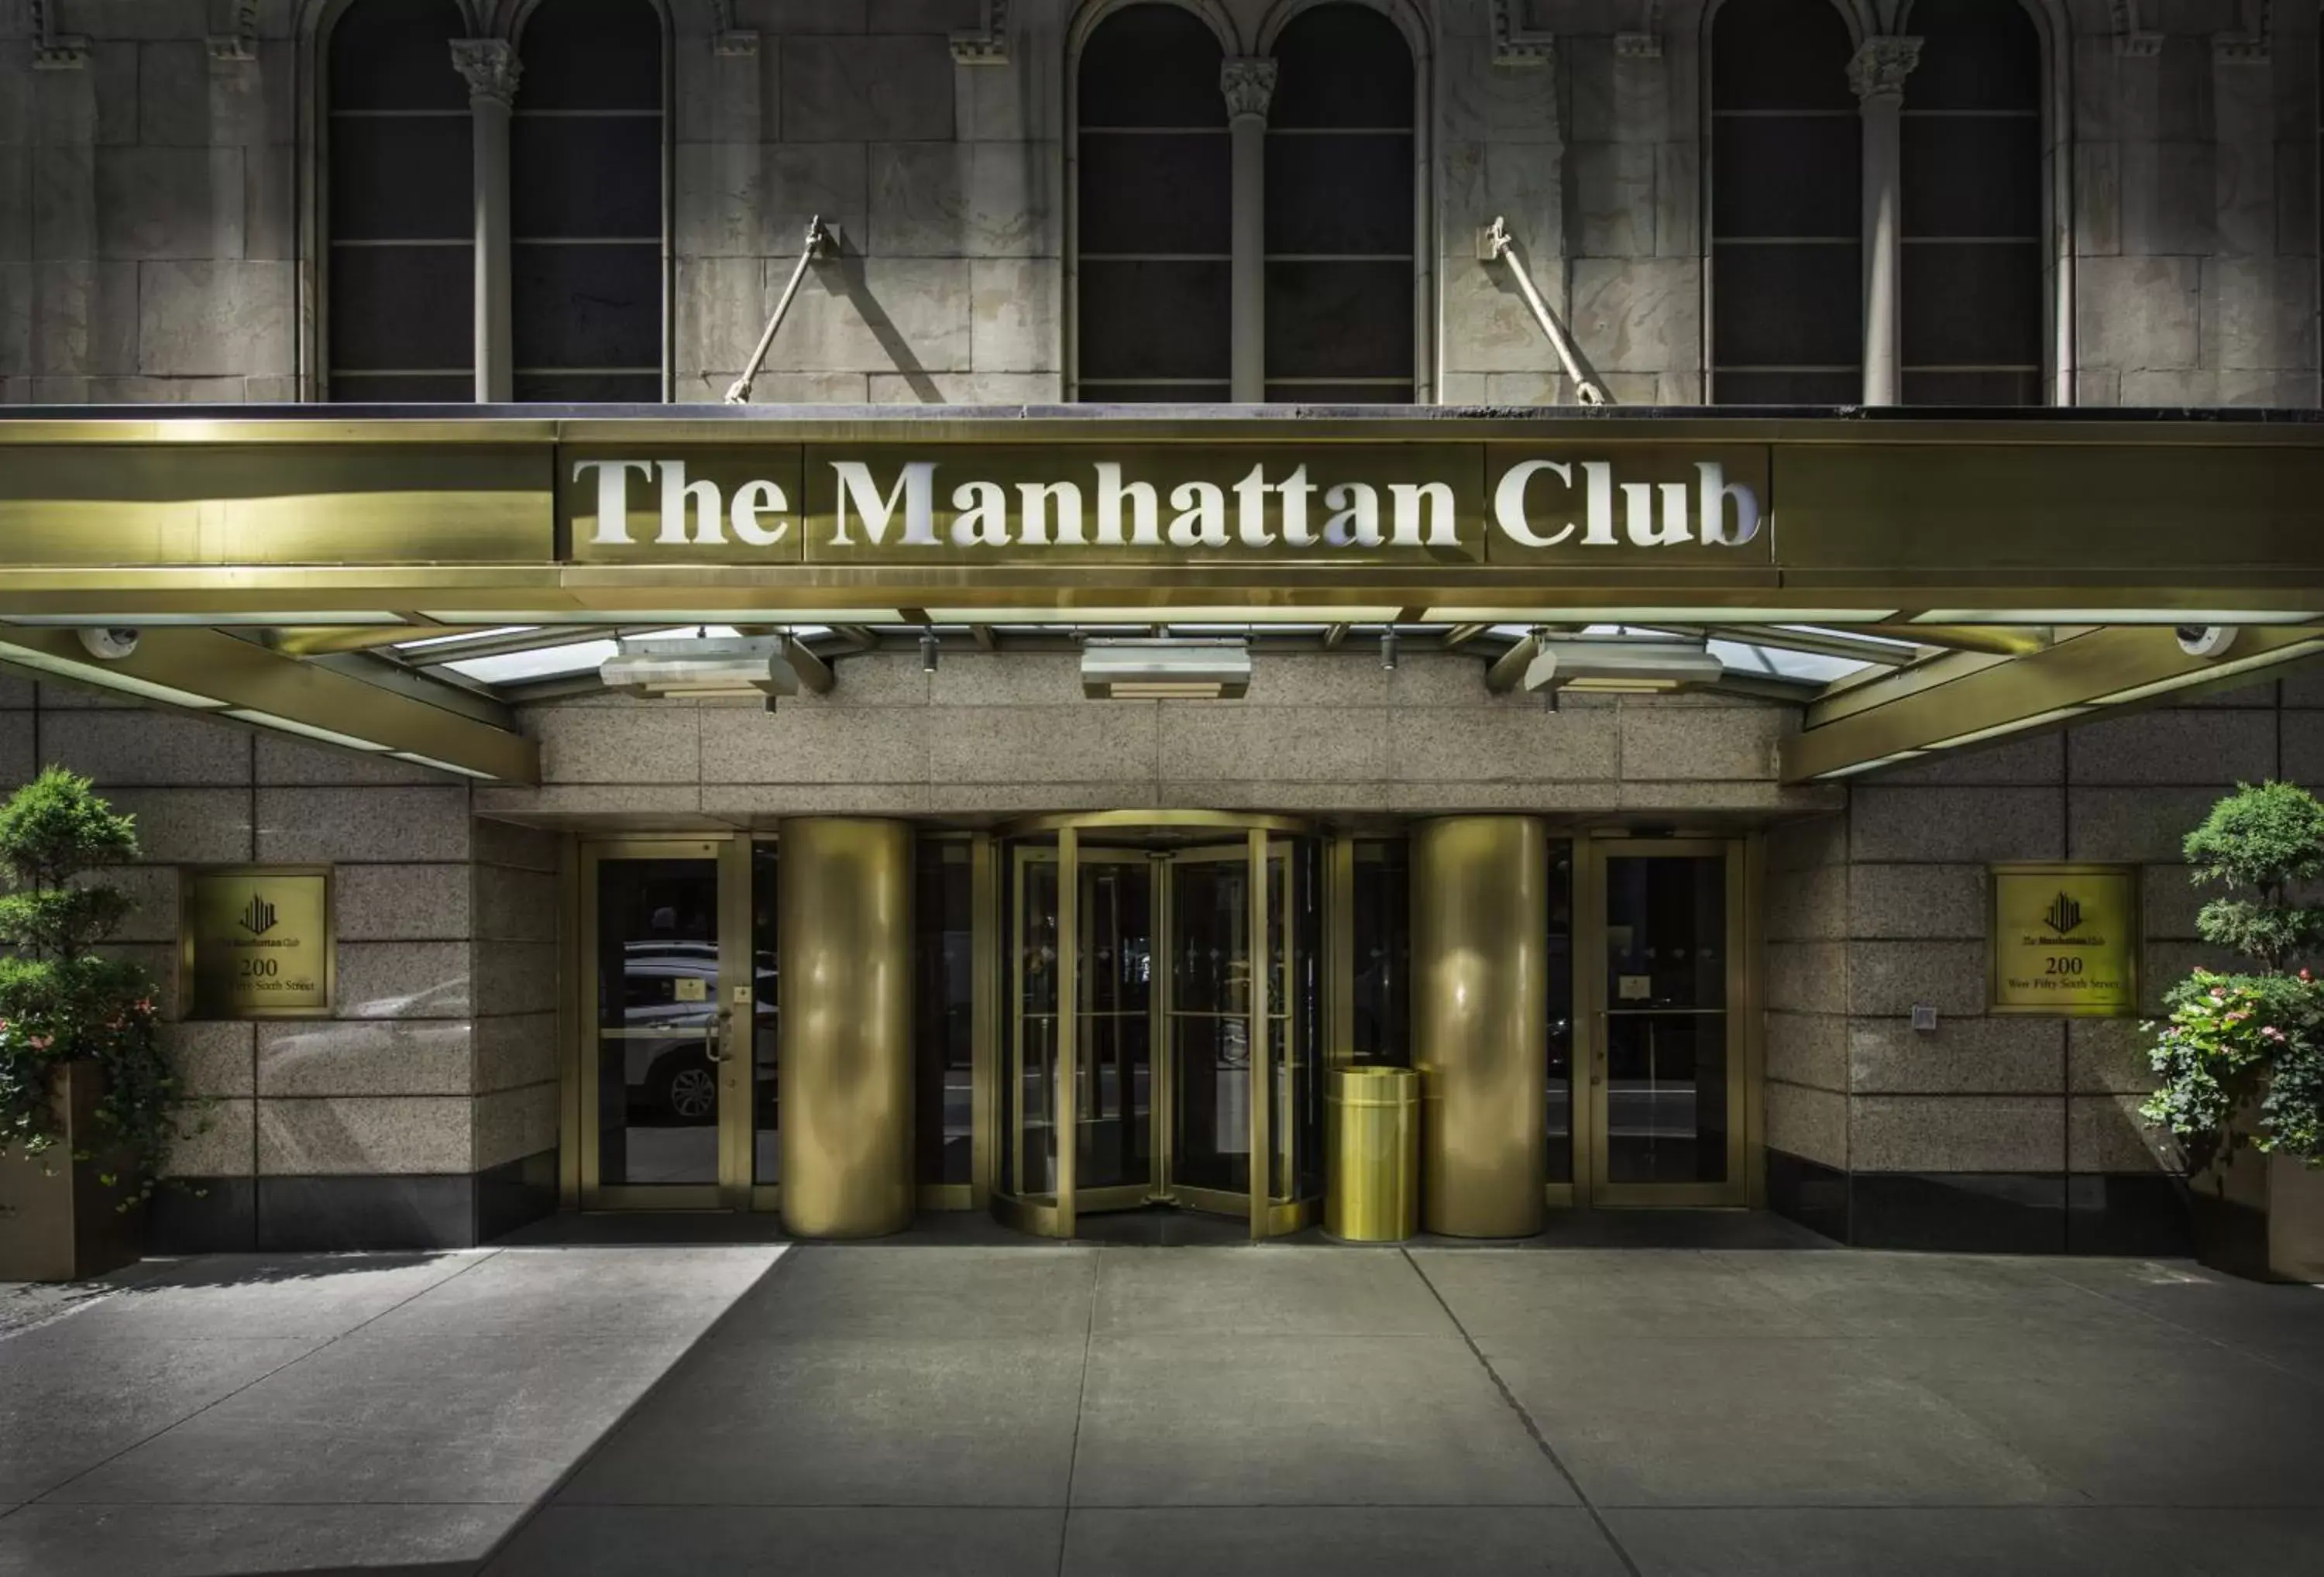 Facade/entrance in The Manhattan Club